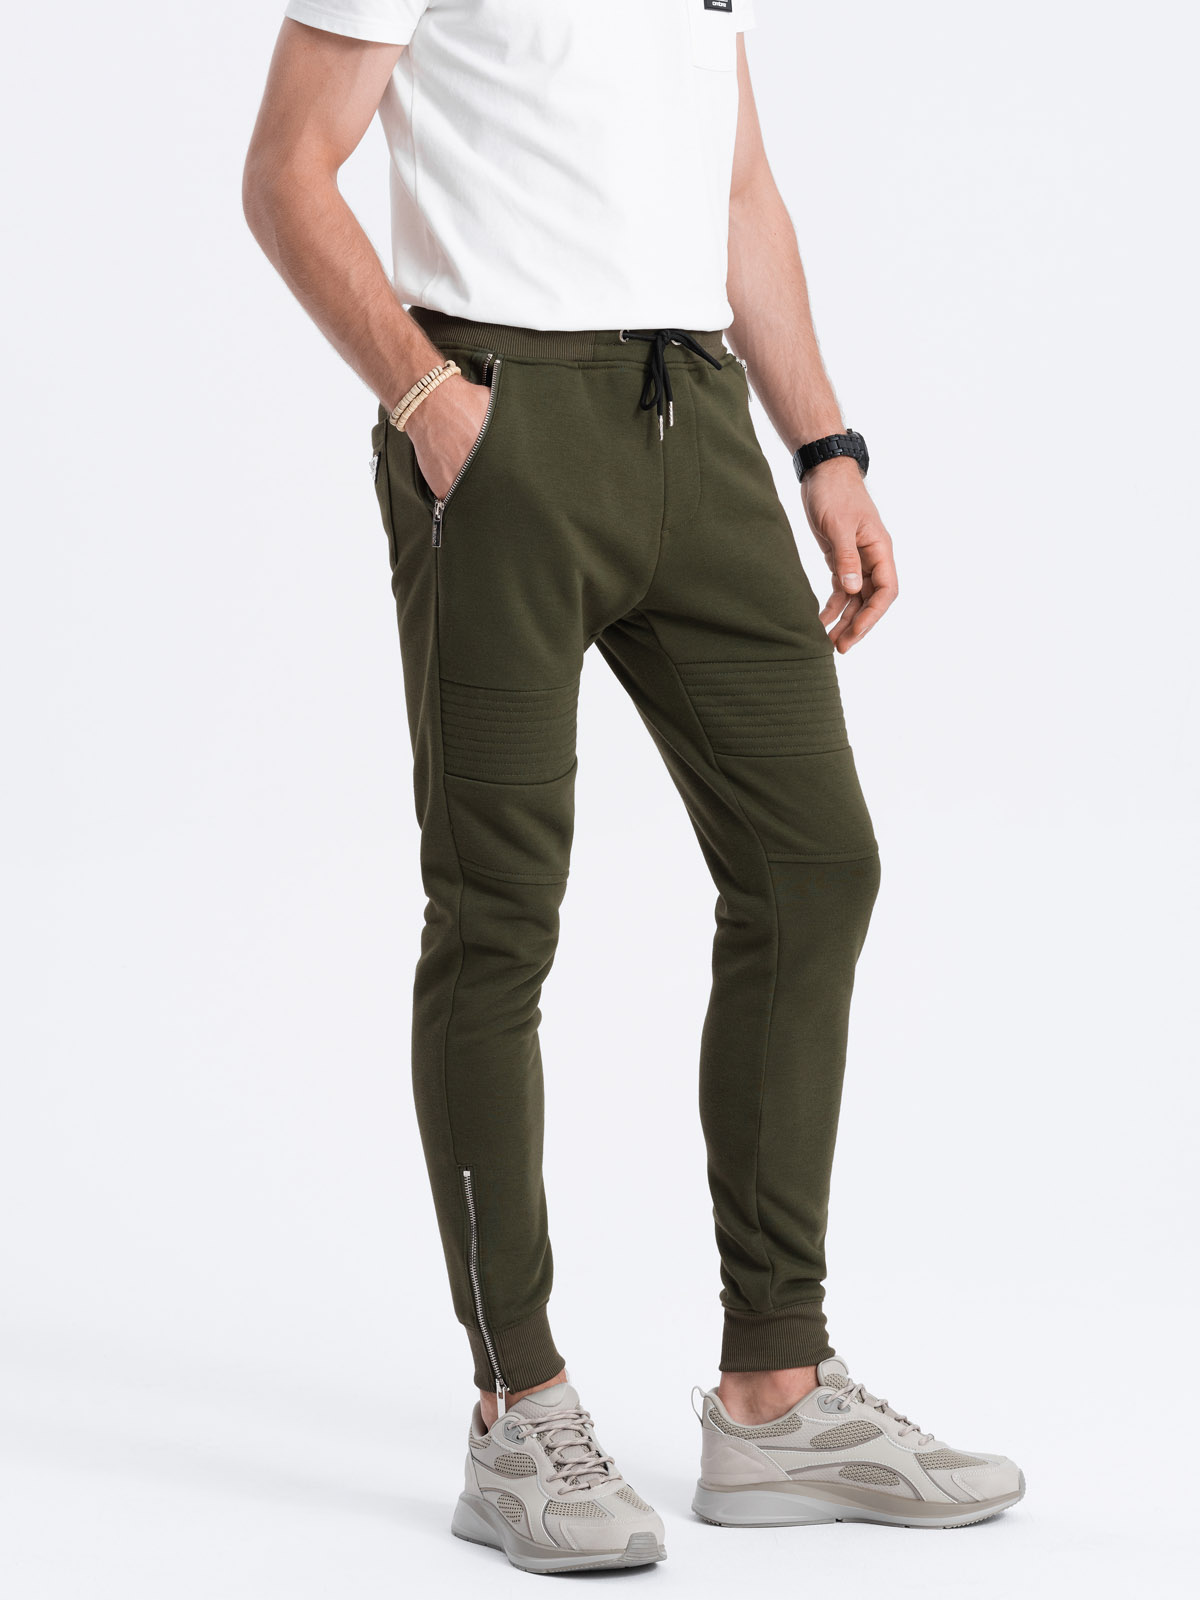 Spodnie męskie dresowe typu jogger - oliwkowe V1 OM-PASK-22FW-004